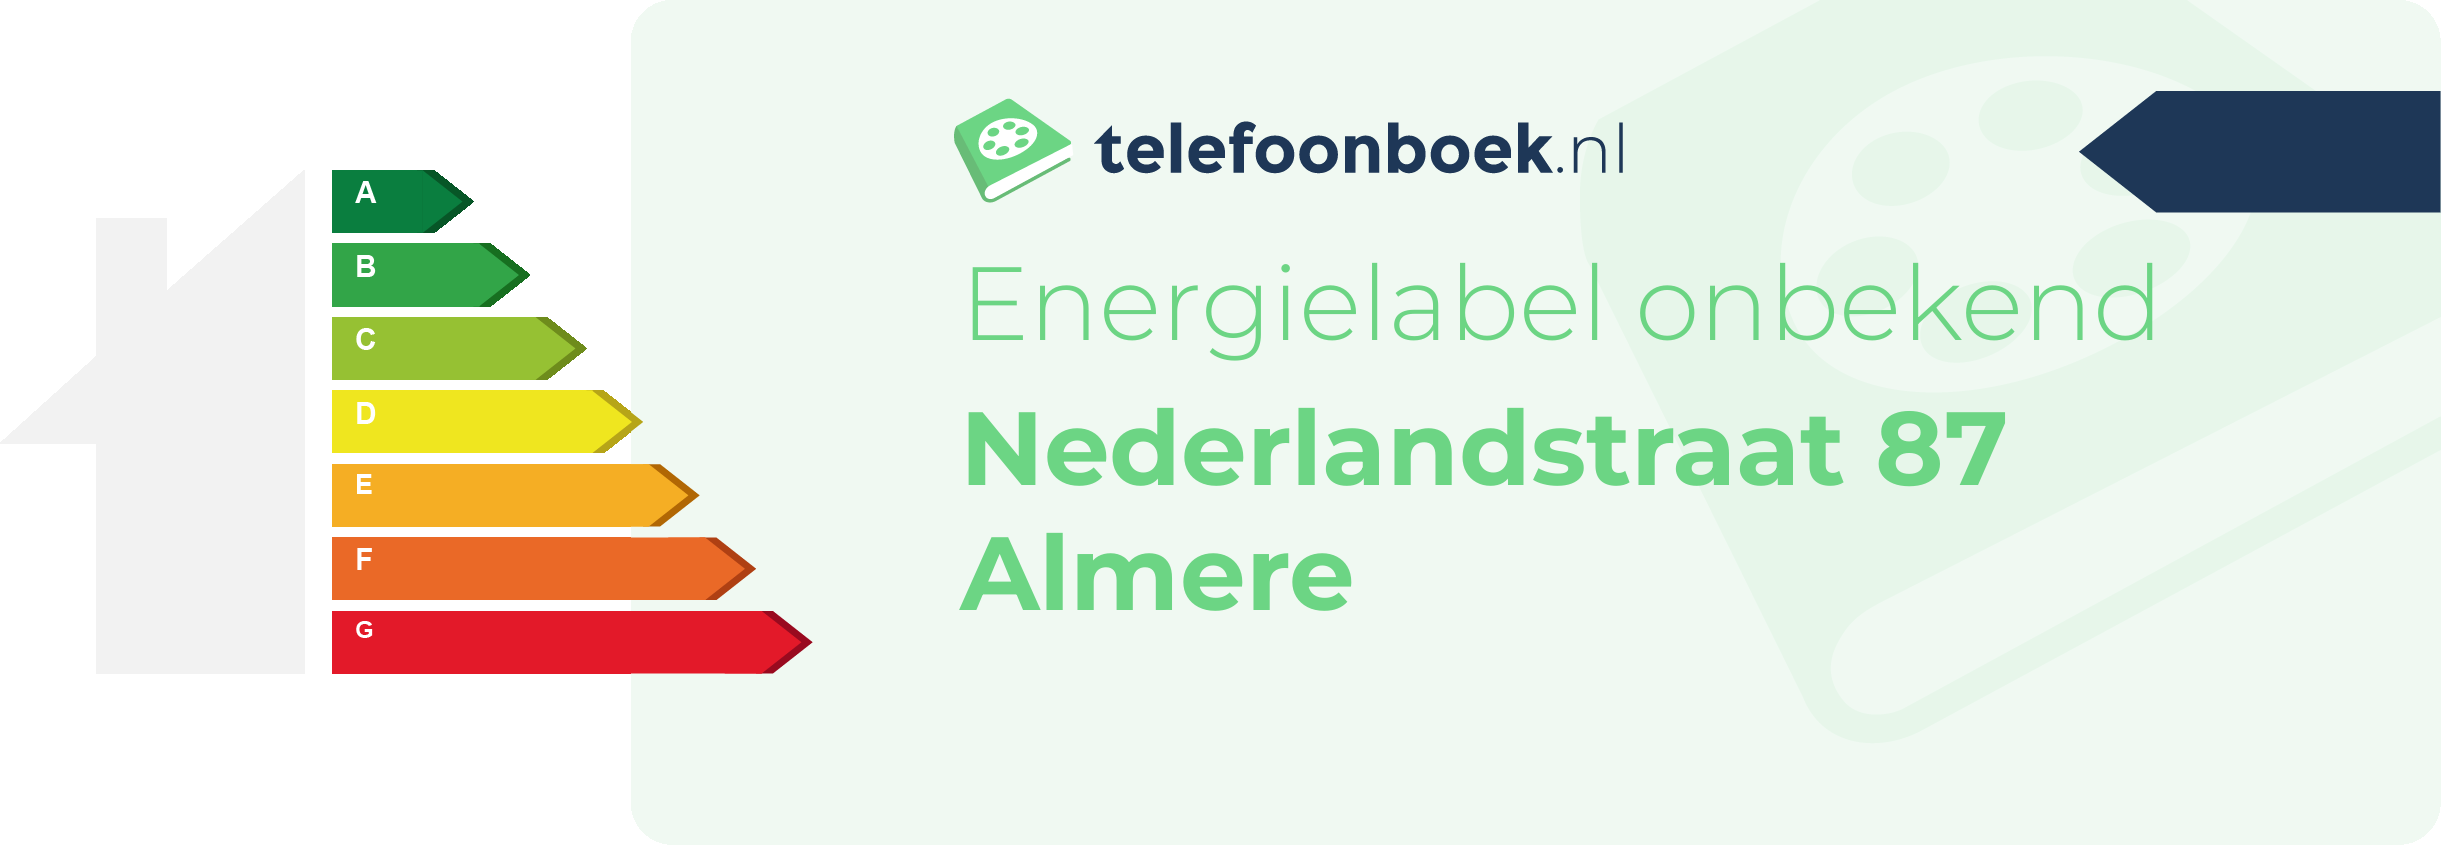 Energielabel Nederlandstraat 87 Almere